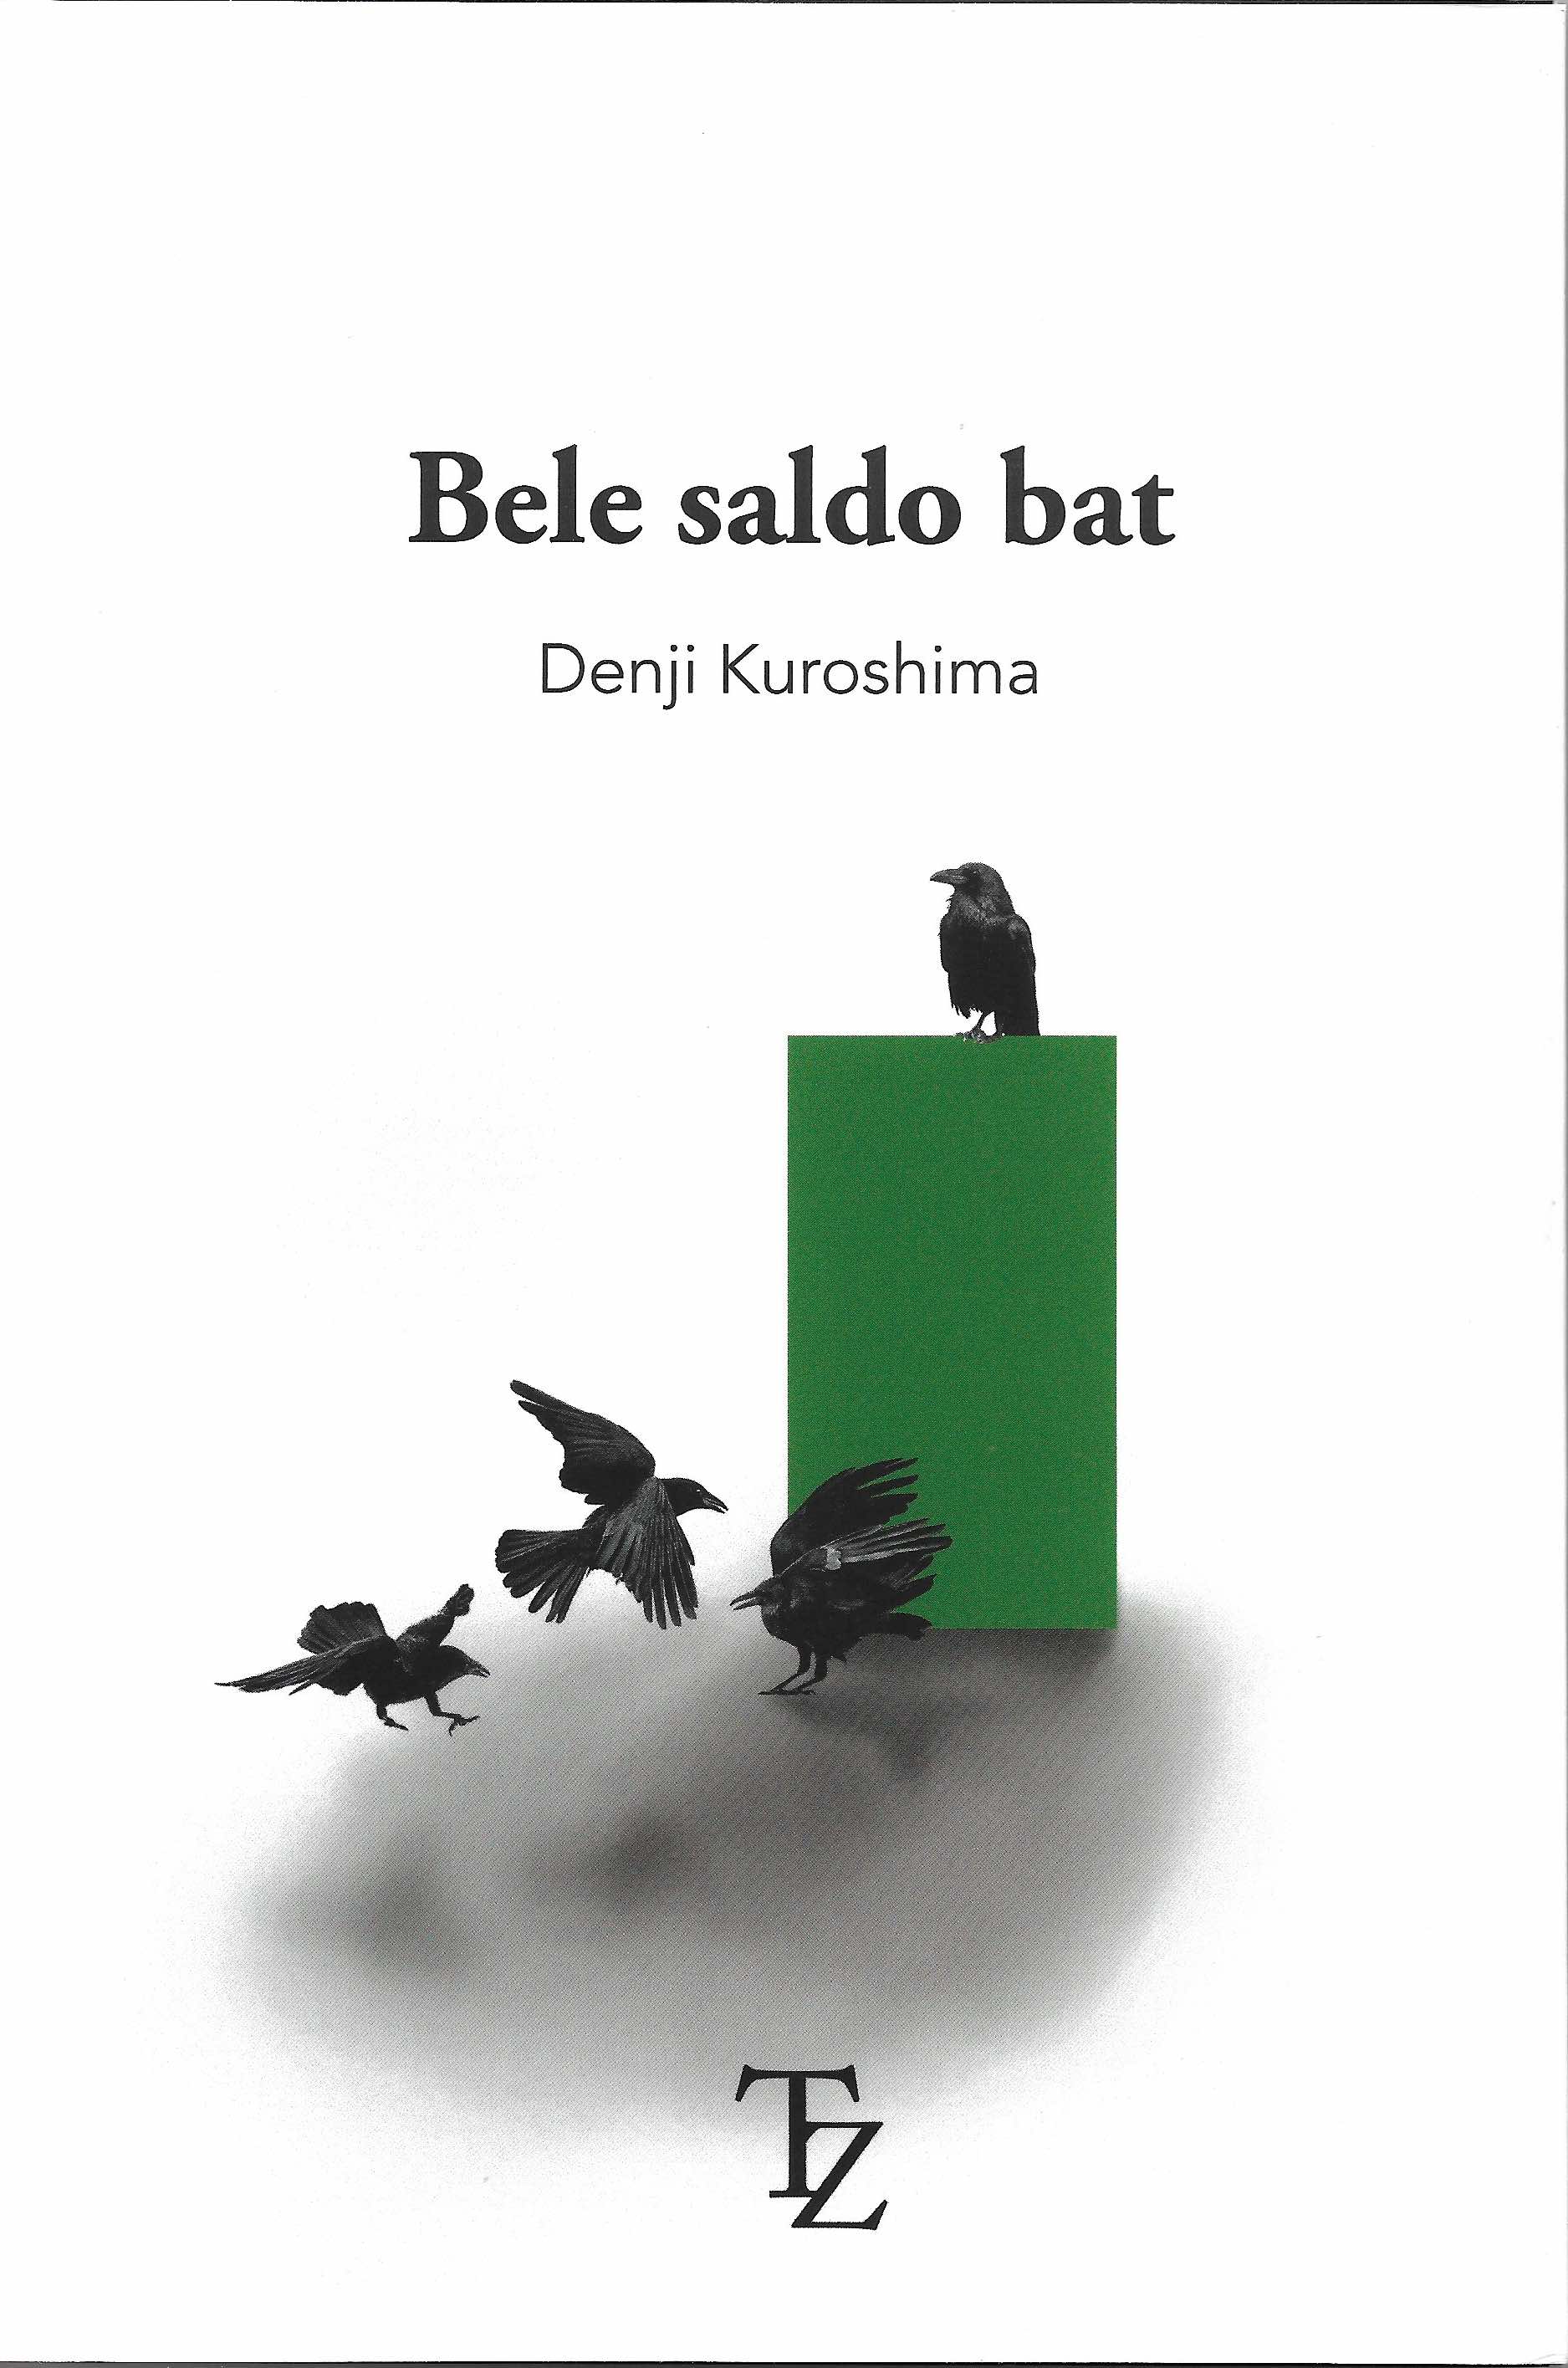 Bele saldo bat (Euskara language)